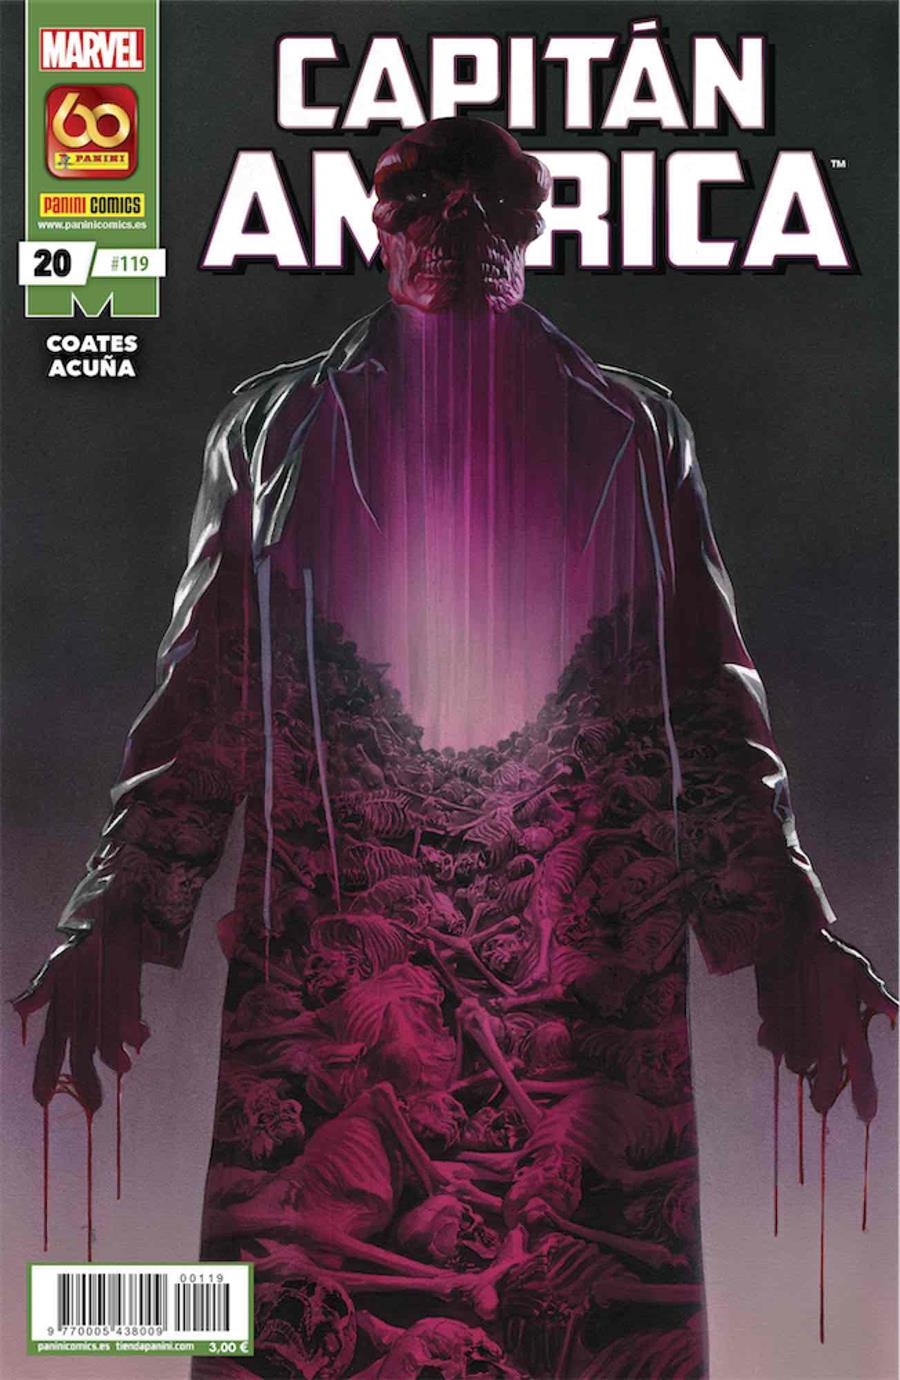 CAPITAN AMERICA Nº20 / Nº119 | Akira Comics  - libreria donde comprar comics, juegos y libros online